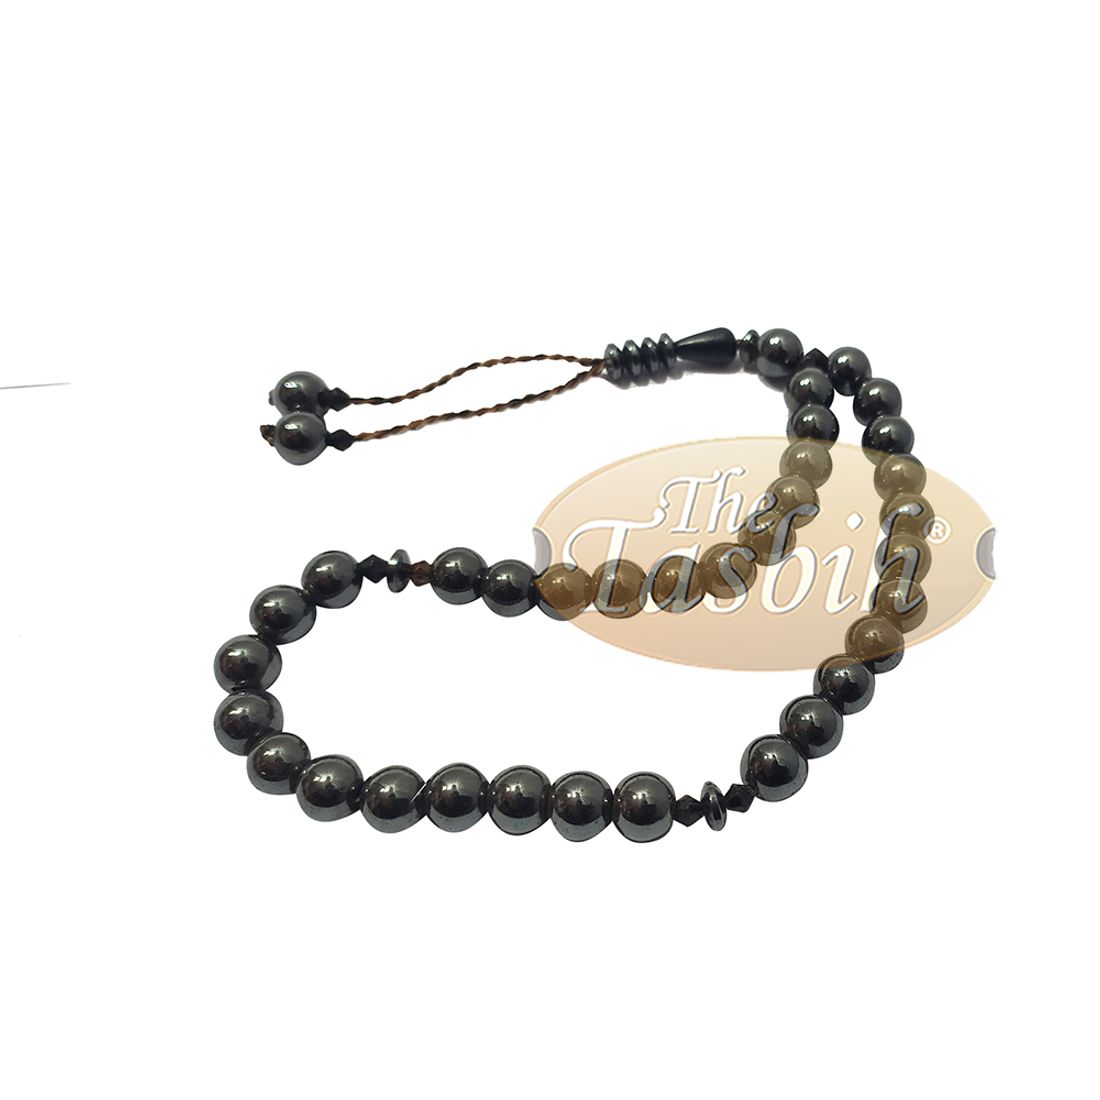 33-bead Tesbih Hematite 8mm Round Beads Prayer Beads Zikr Beads